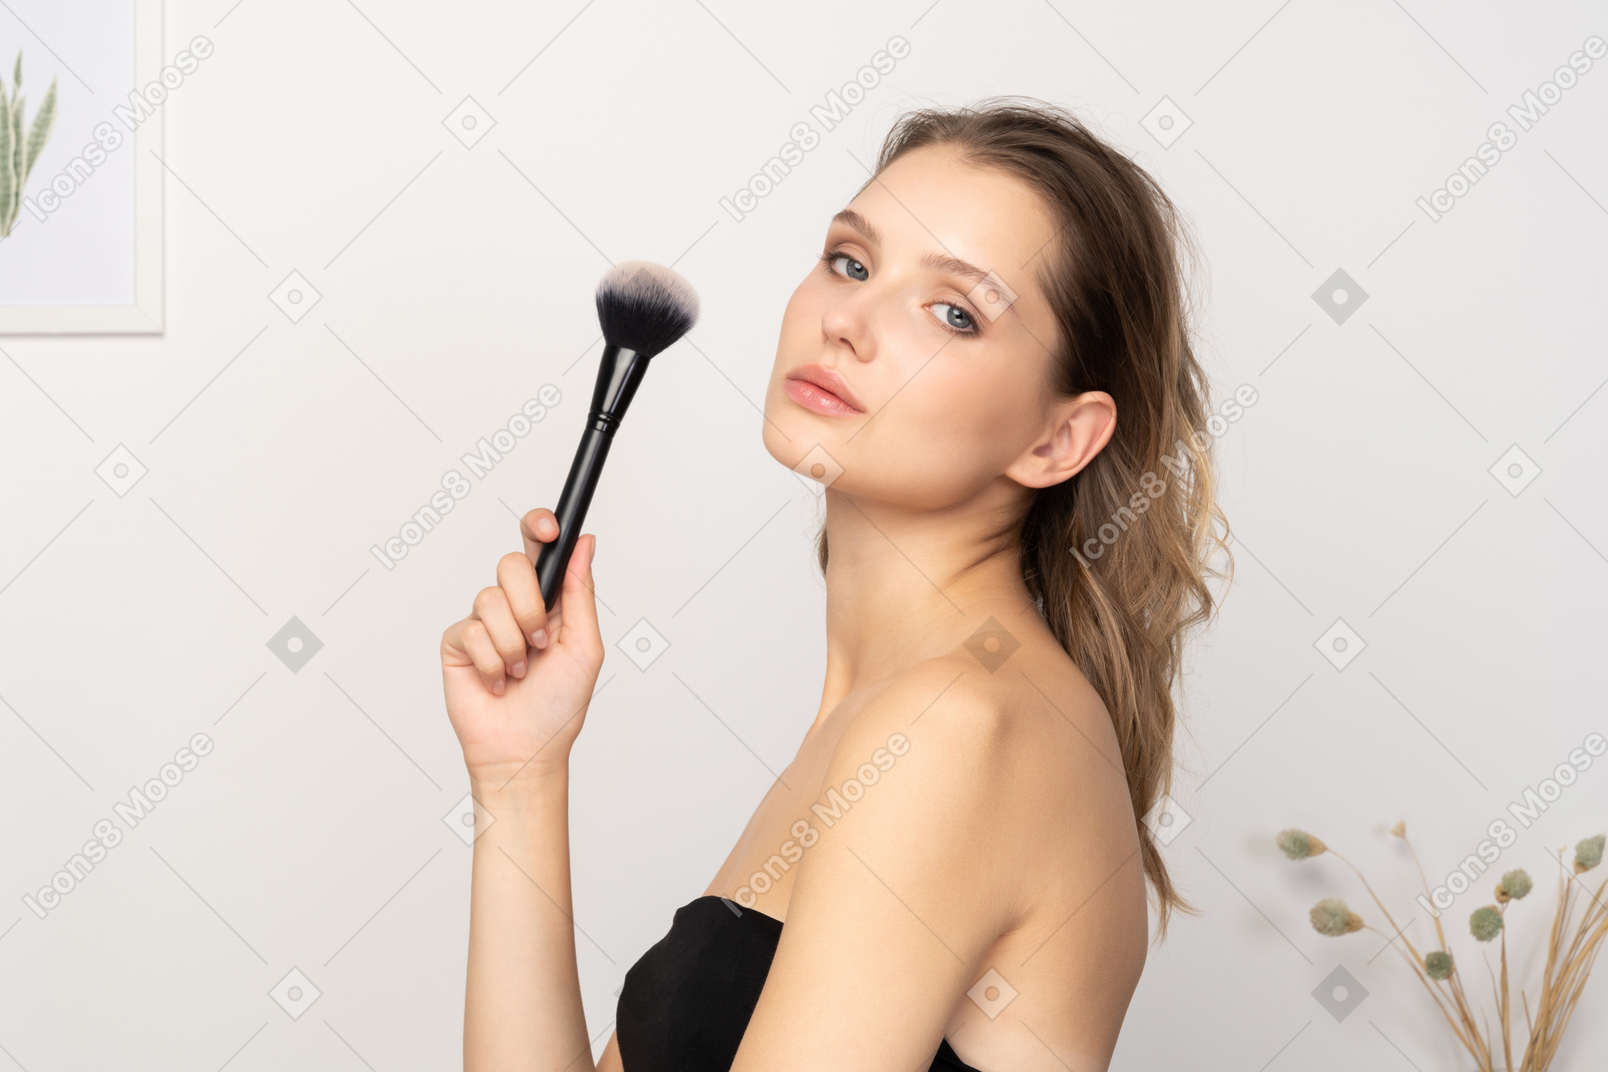 Вид сбоку чувственной молодой женщины, держащей кисть для макияжа и смотрящей в камеру